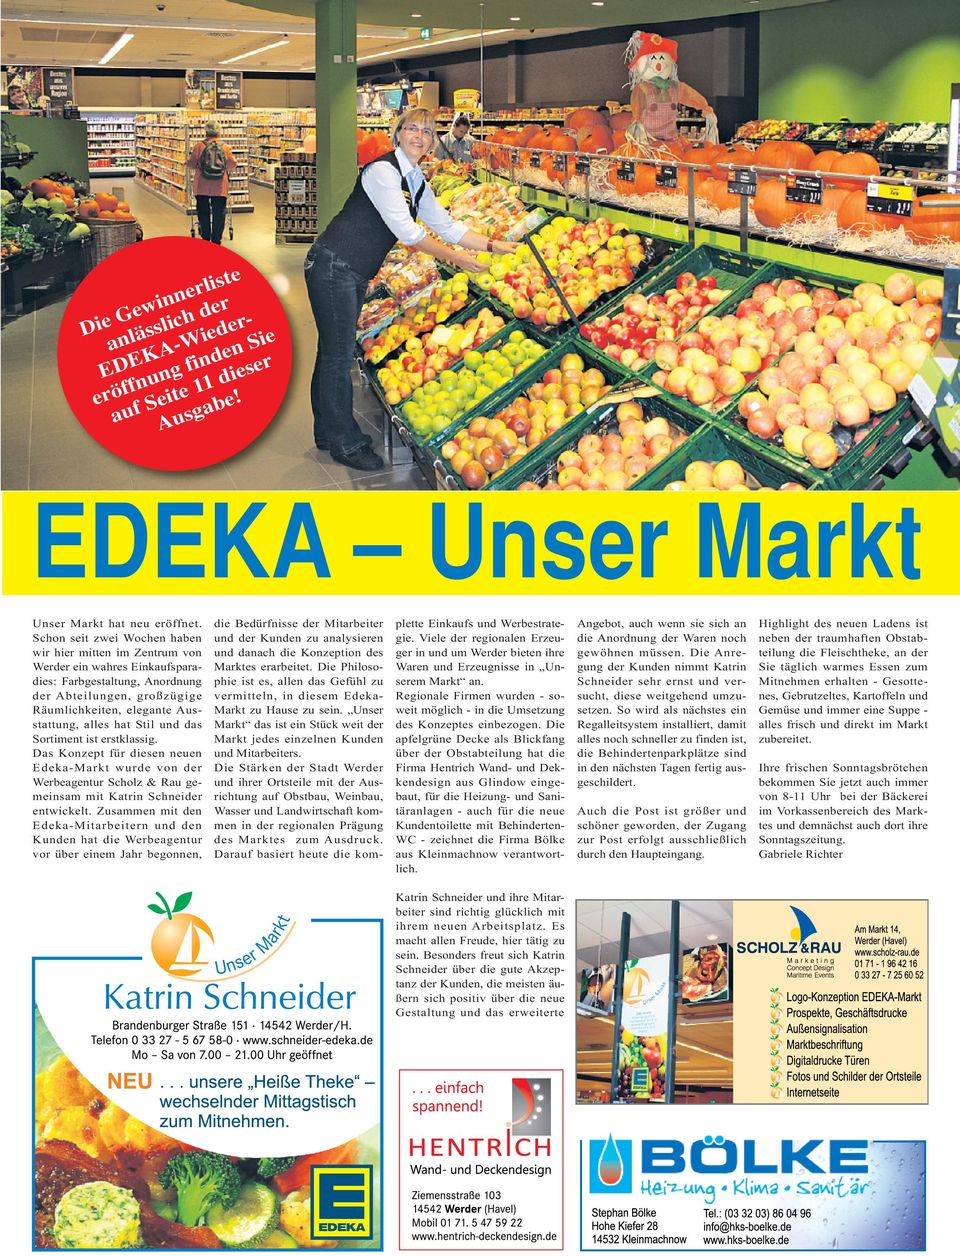 Stil und das Sortiment ist erstklassig. Das Konzept für diesen neuen Edeka-Markt wurde von der Werbeagentur Scholz & Rau gemeinsam mit Katrin Schneider entwickelt.